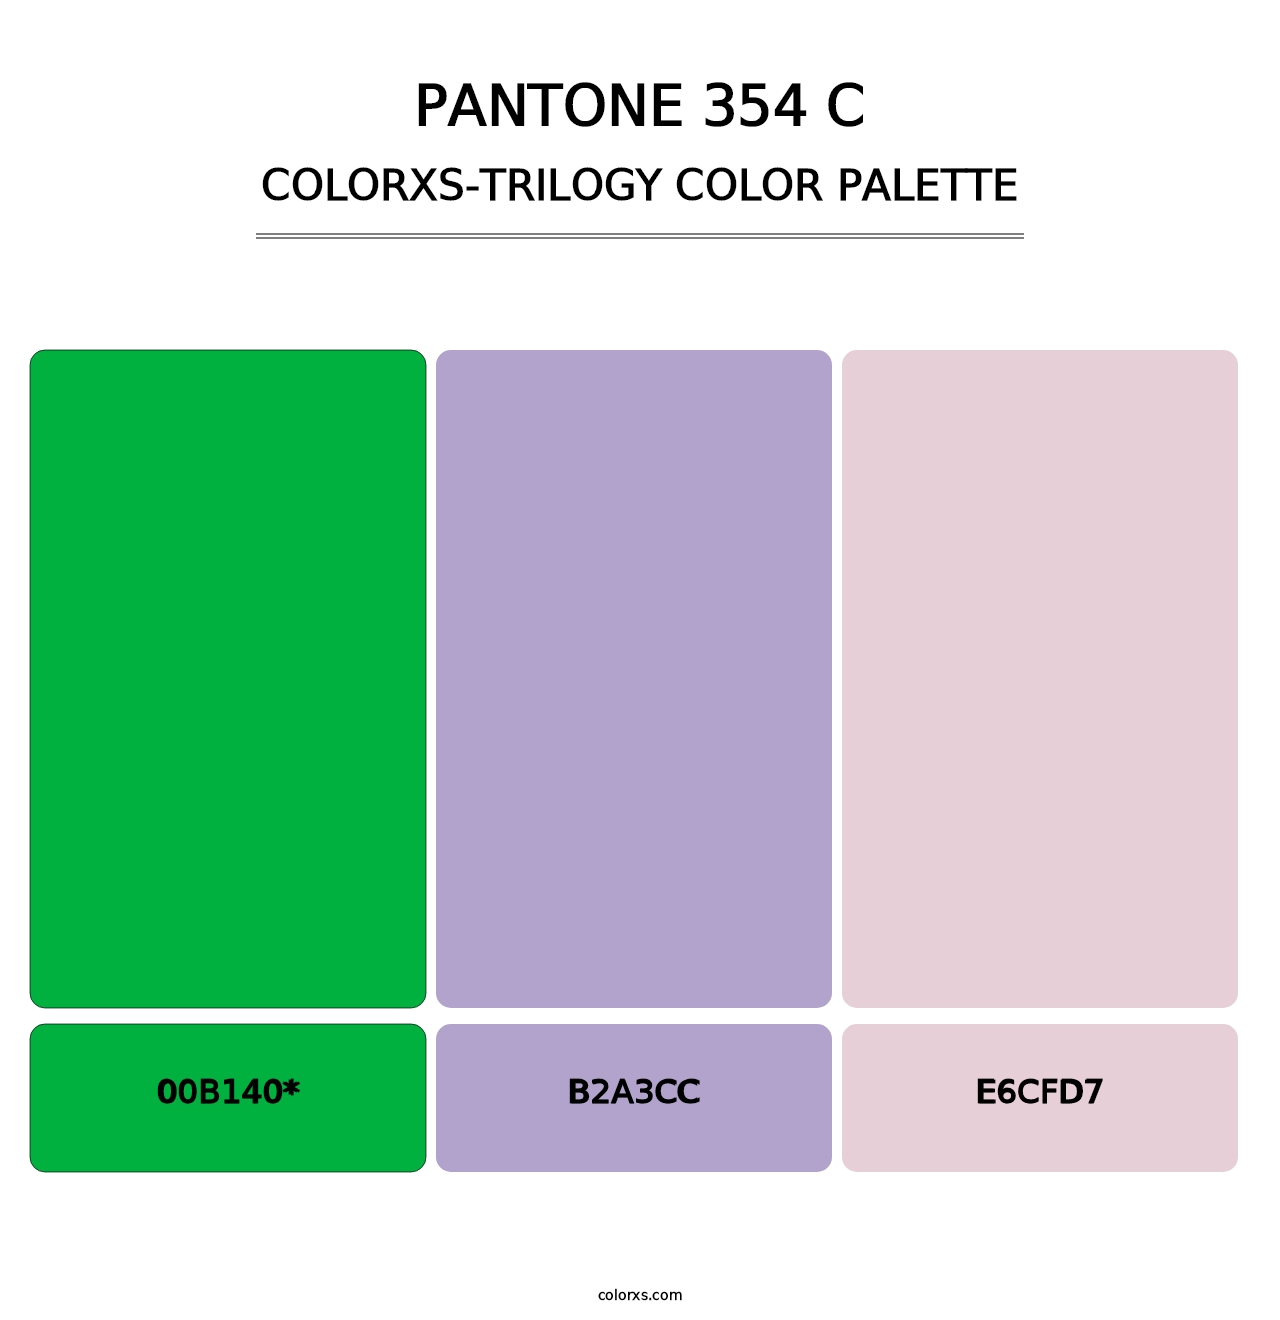 PANTONE 354 C - Colorxs Trilogy Palette